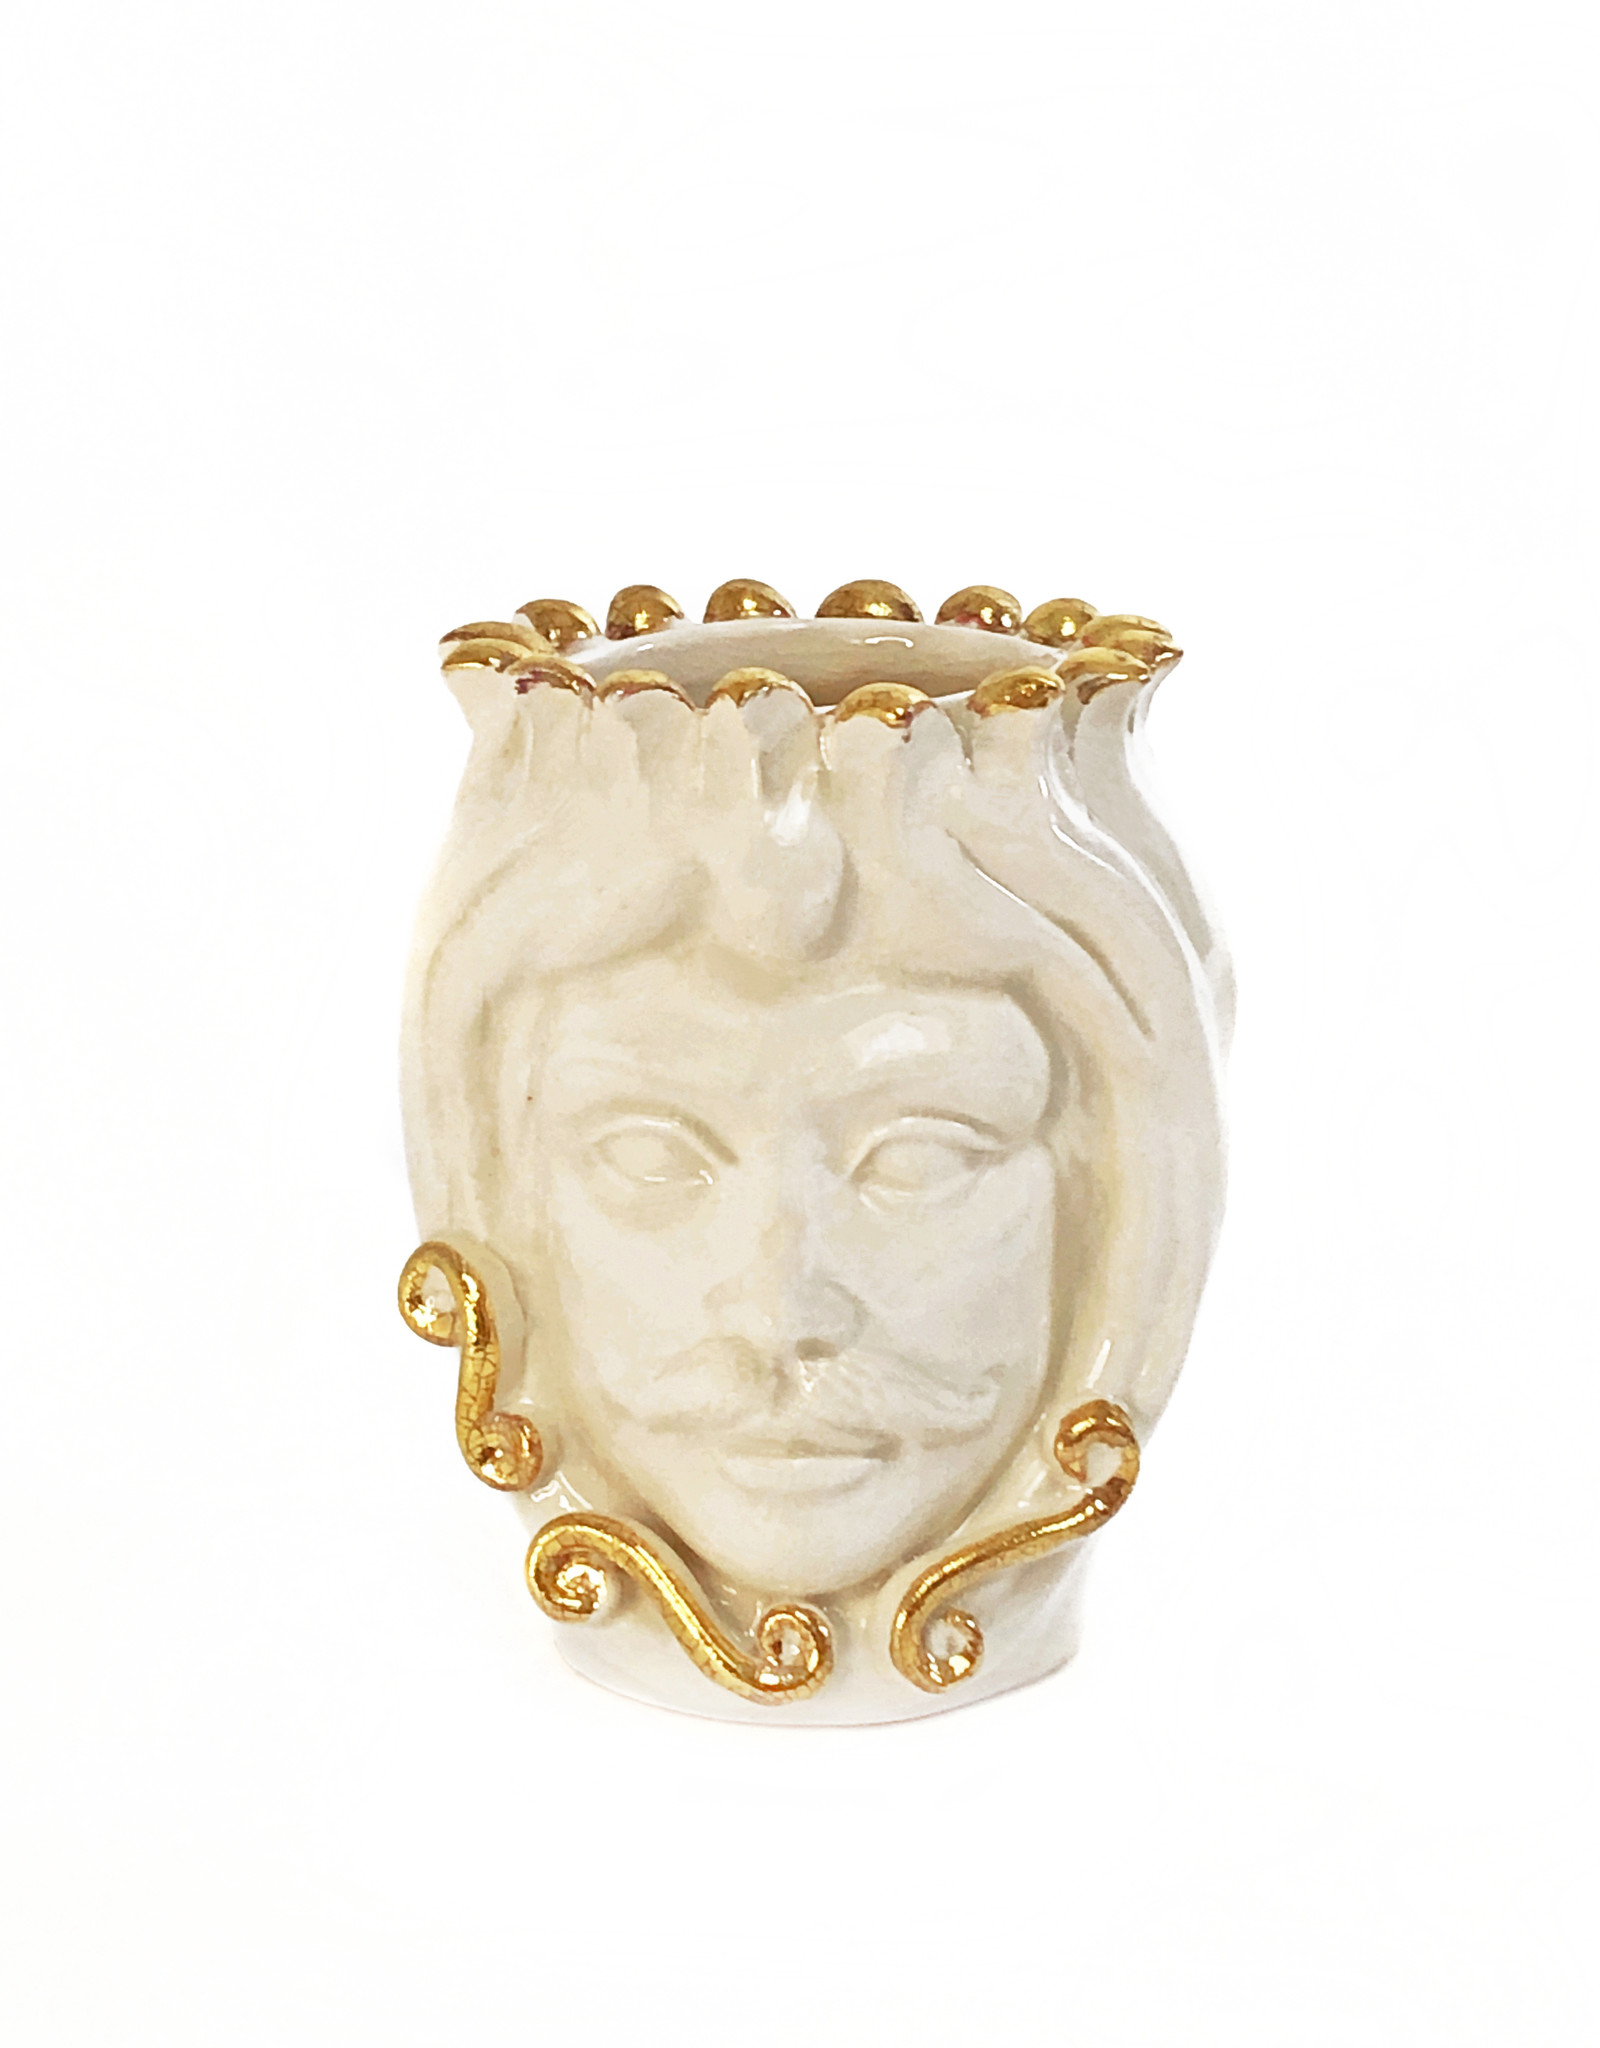 Gold and cream Testa di Moro vase - Tancredi - Curiosa Cabinet